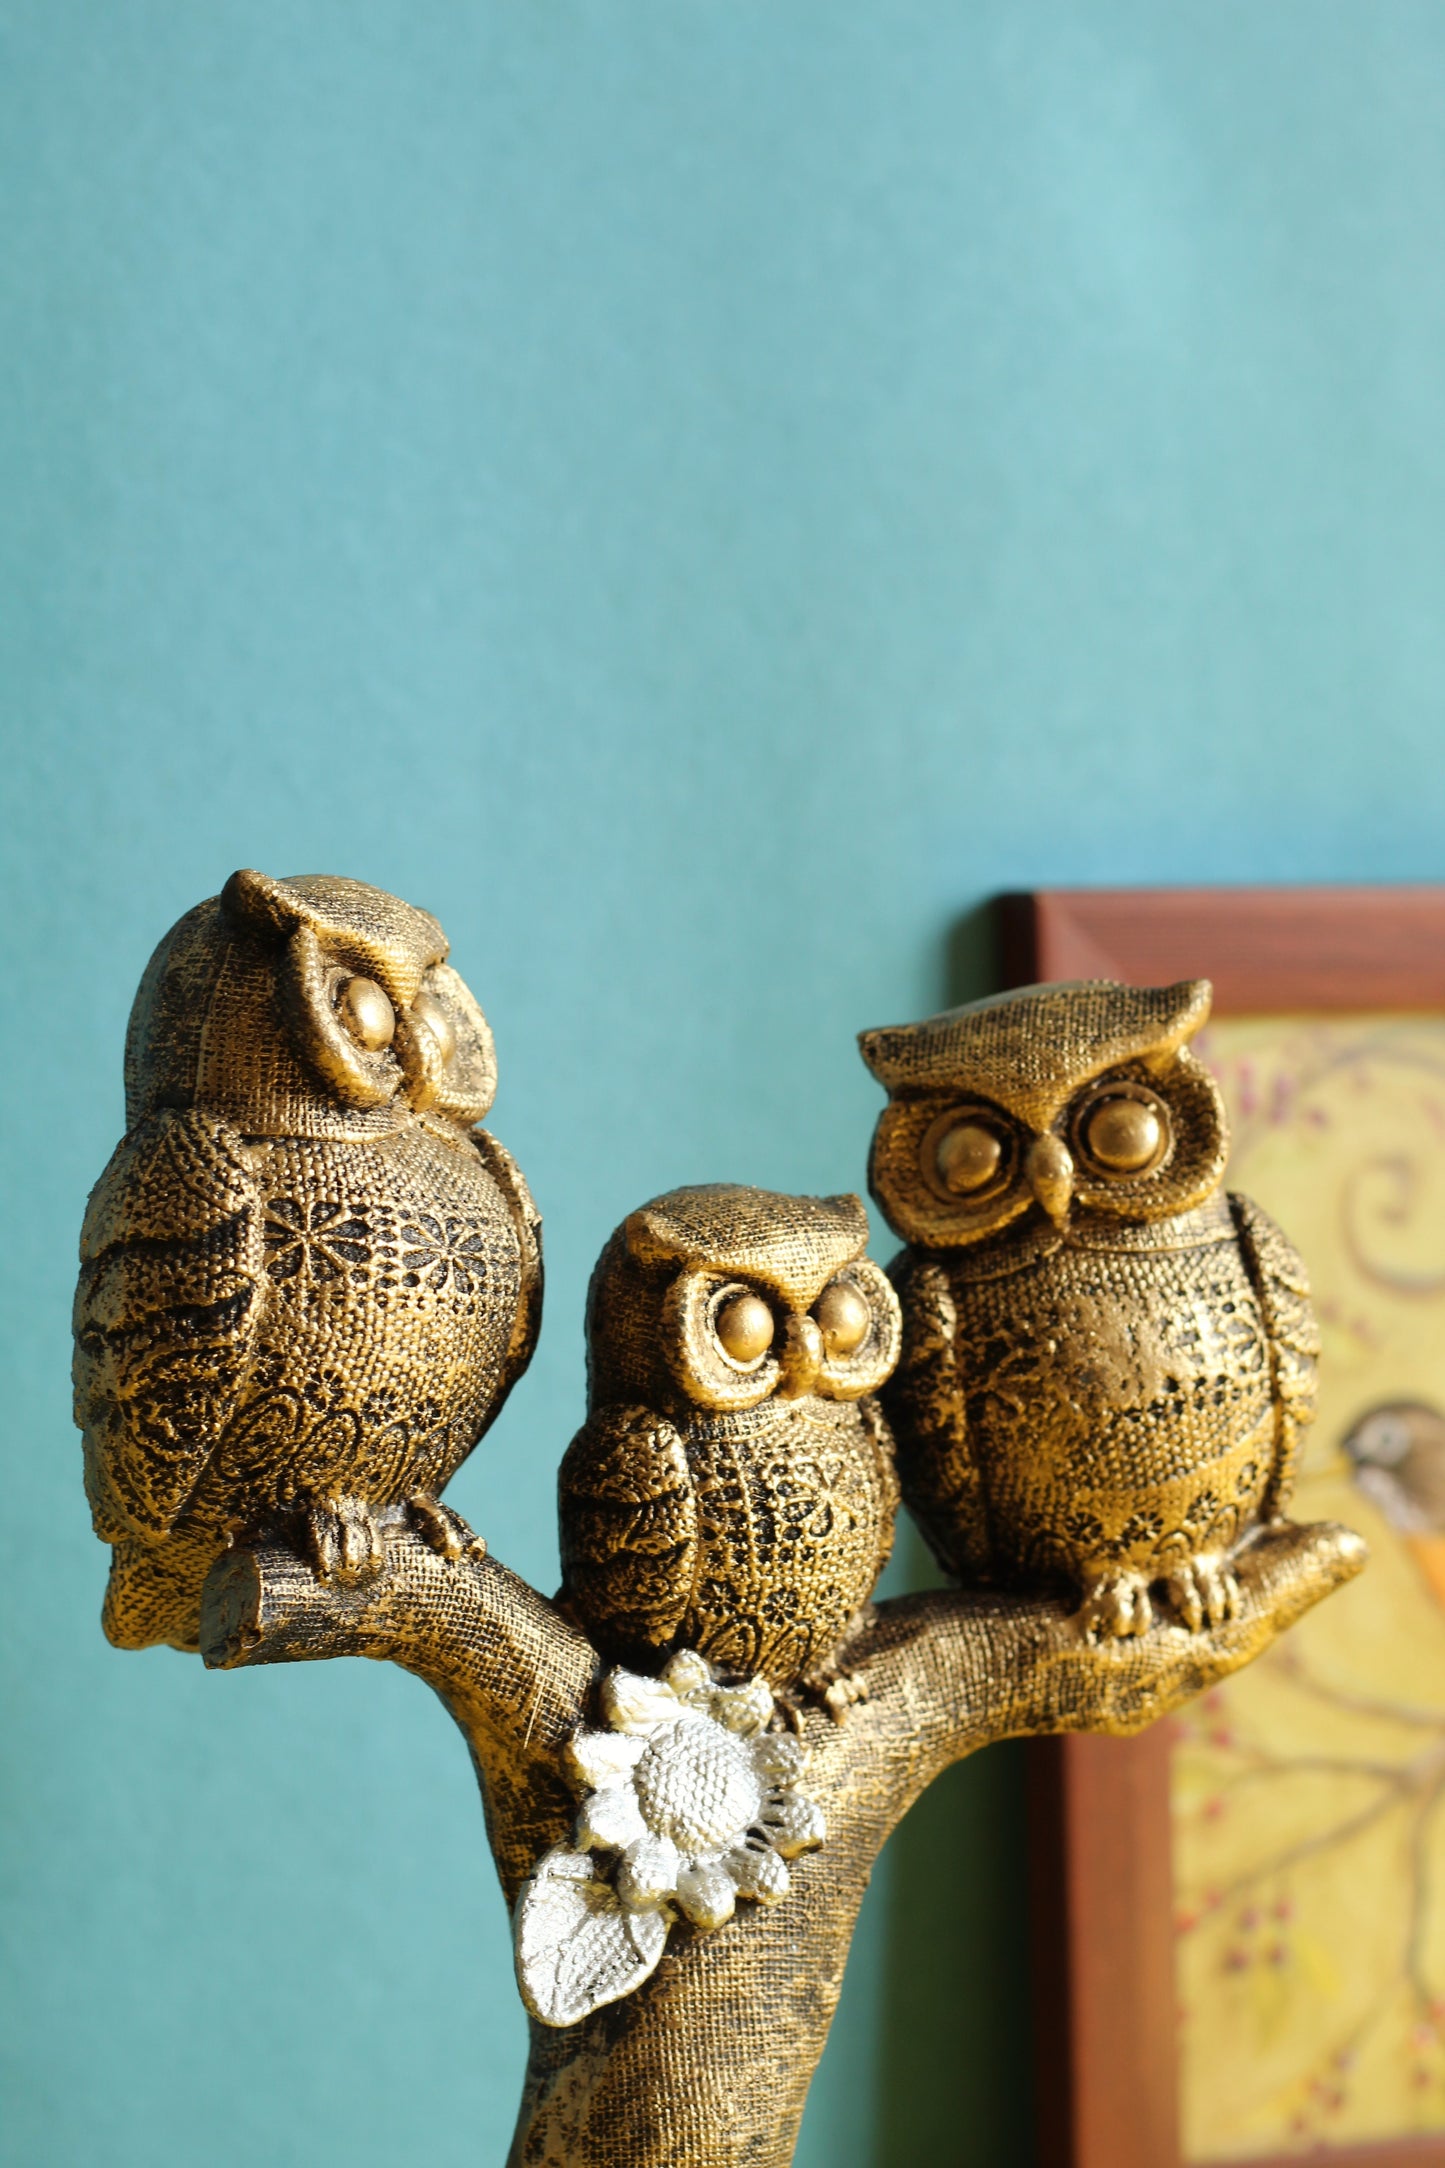 3 Owls on a Tree